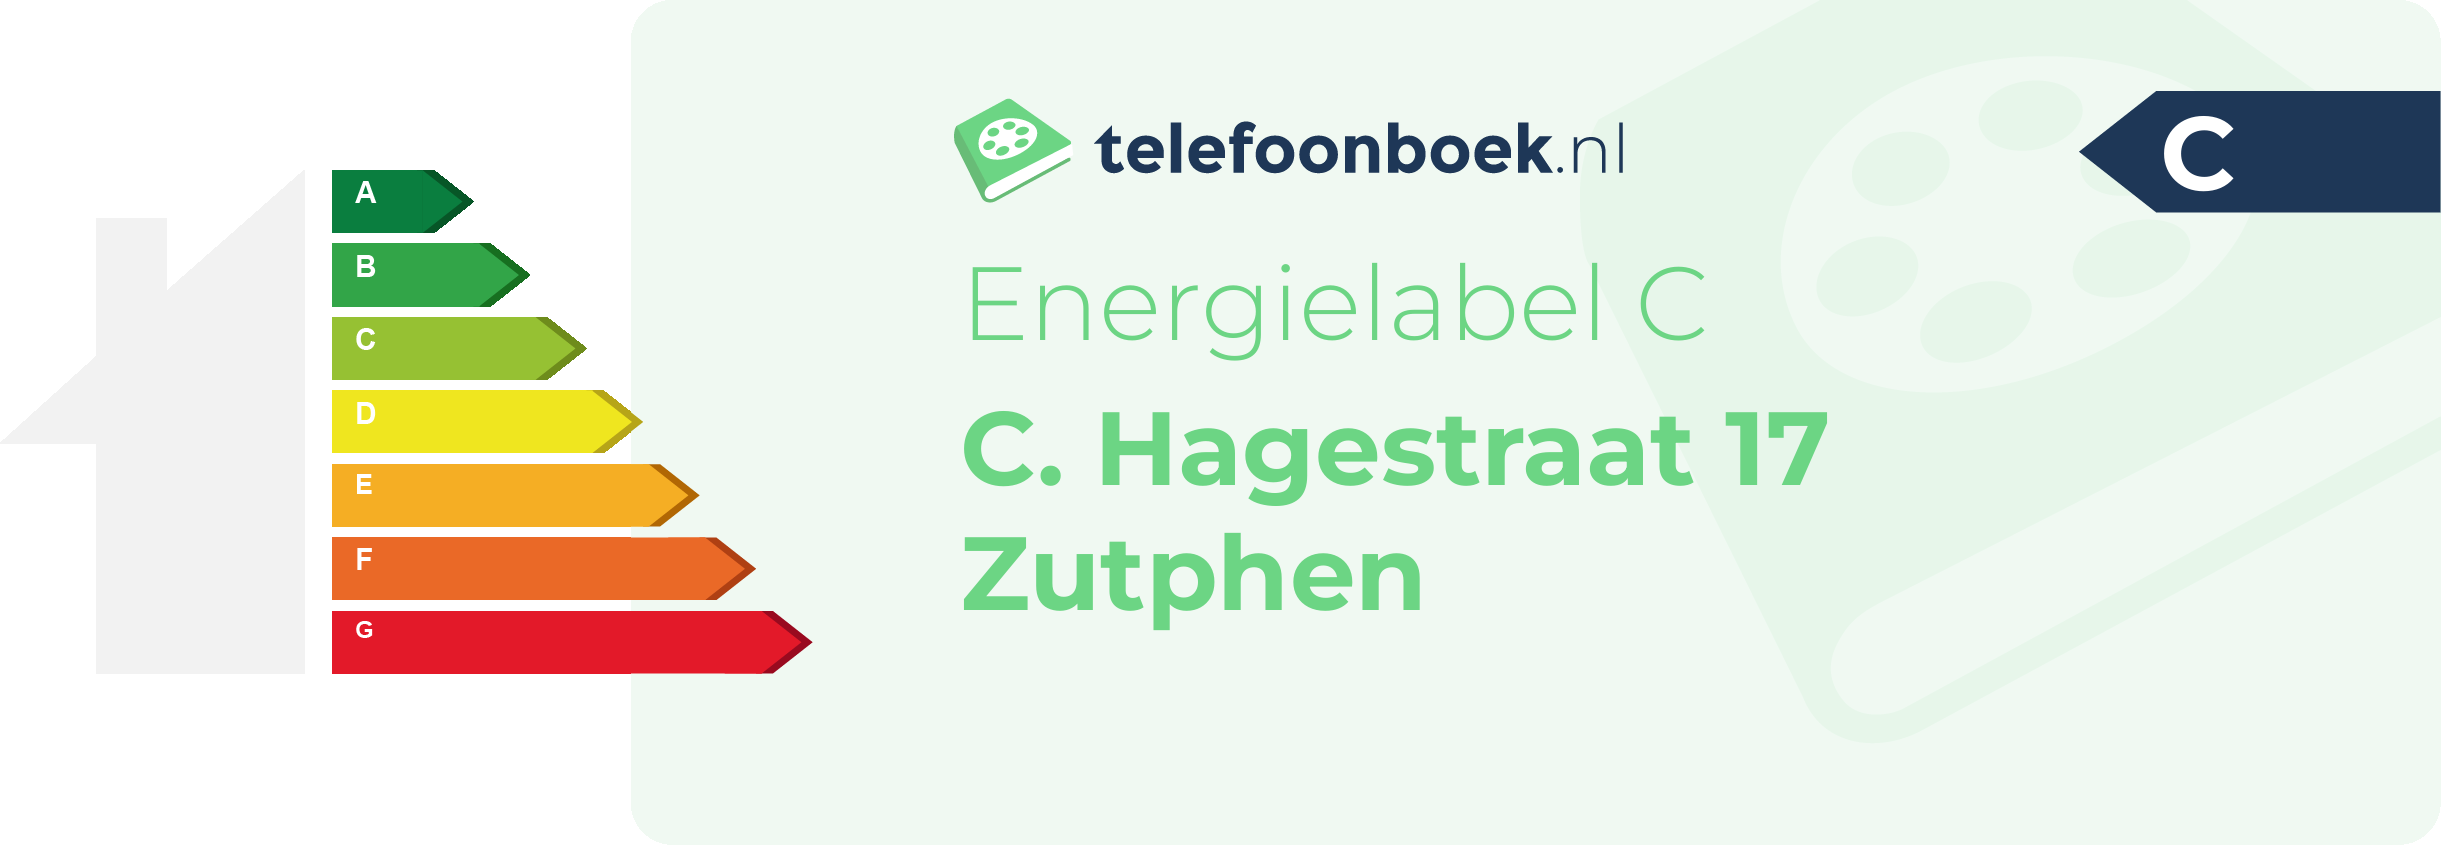 Energielabel C. Hagestraat 17 Zutphen